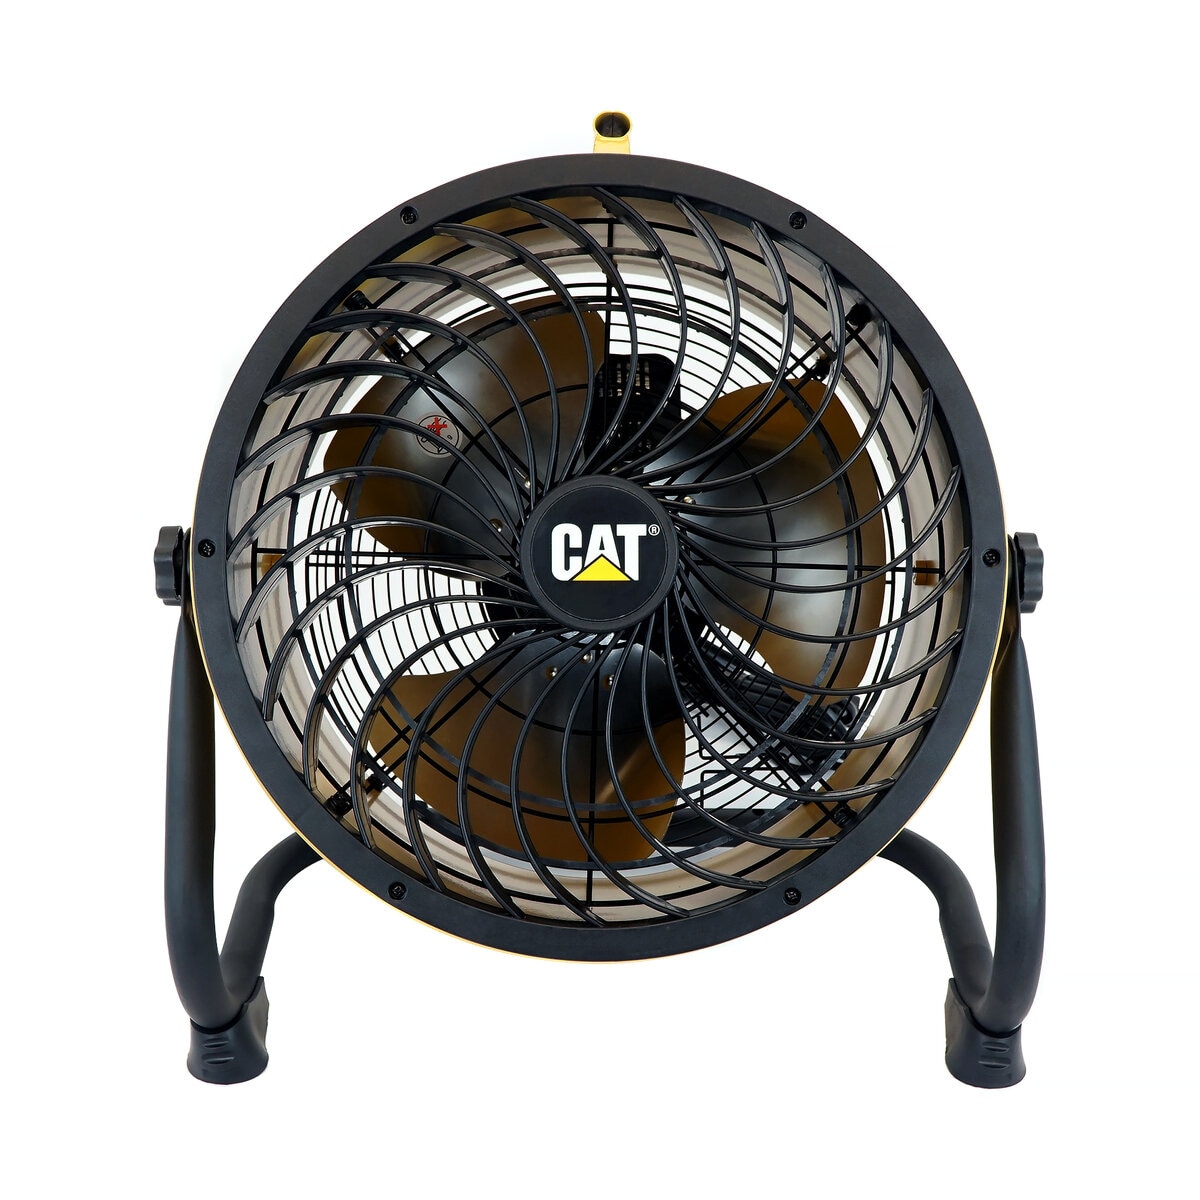 CATERPILLAR キャタピラー CAT サーキュレータ- 45cm 工場扇 業務用 扇風機 送風機 壁掛け 床置き 屋外 EEMC-18ACBK ブラック - 4